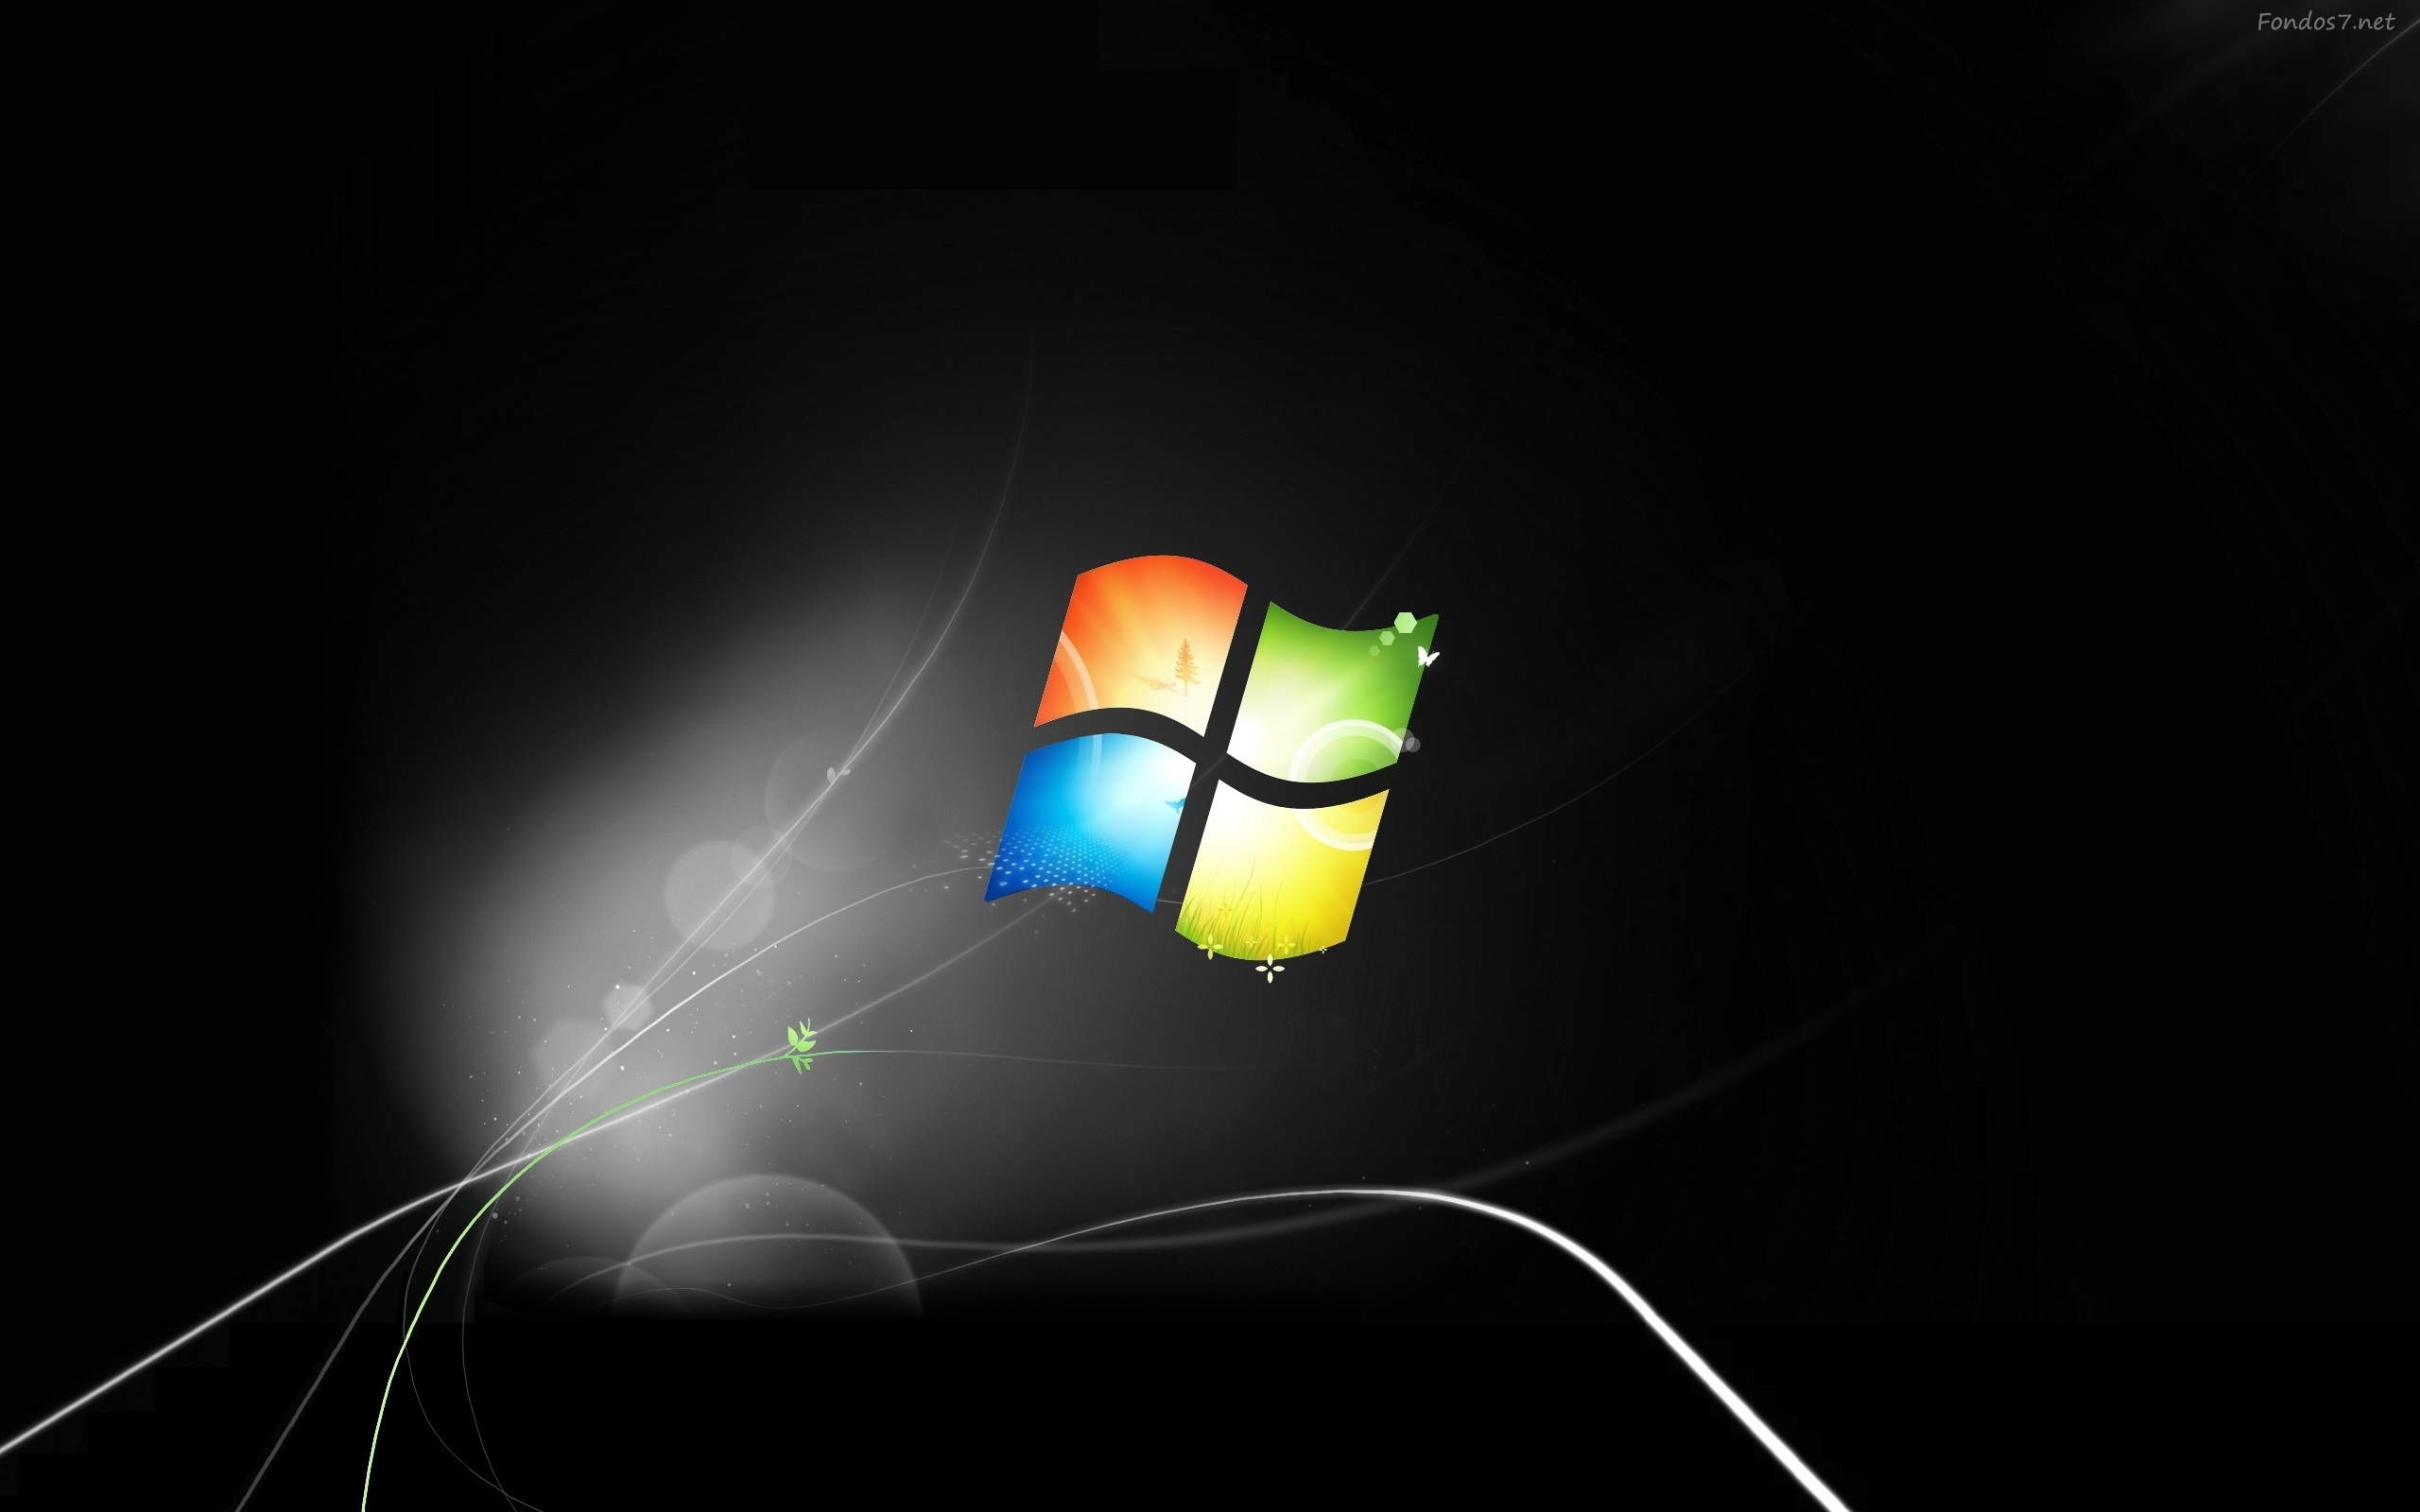 Windows 7 Background Black: Tông màu đen của hình nền Windows 7 sẽ làm cho màn hình desktop của bạn trở nên bí ẩn và đầy cấu trúc. Hình nền đen đơn giản và trang trọng sẽ giúp tối ưu hóa sự tập trung cho công việc của bạn. 